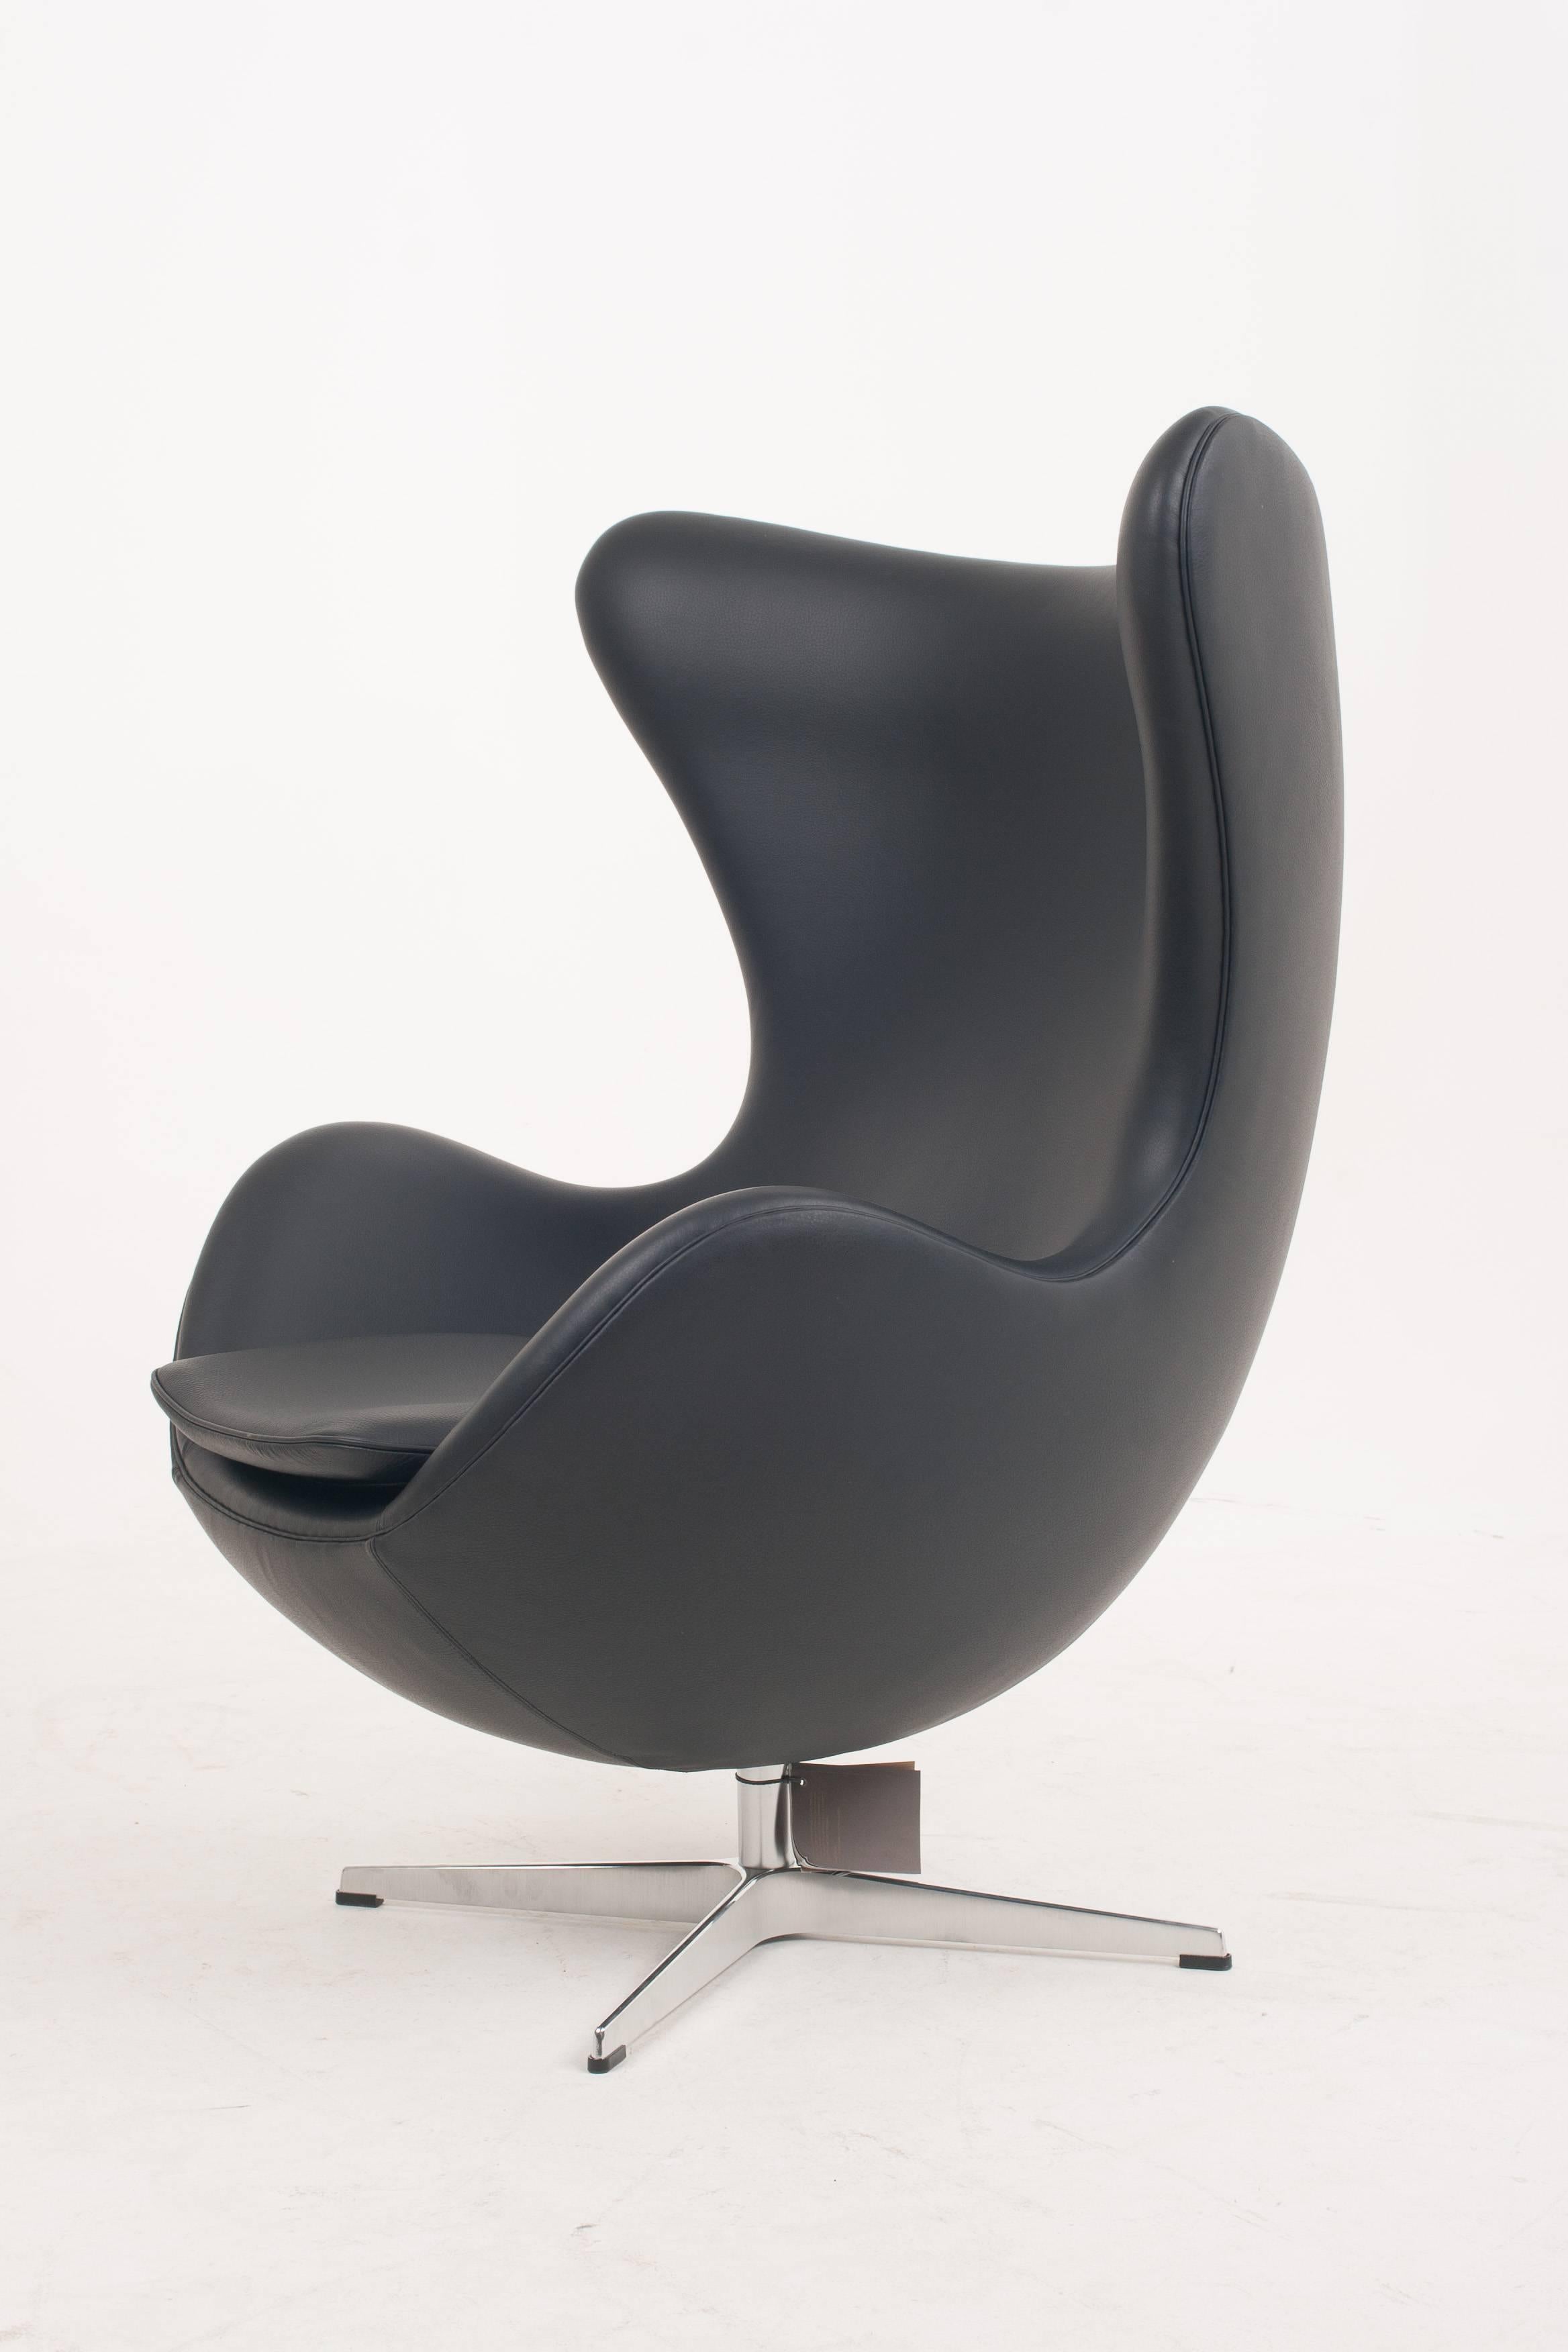 Contemporary Genuine Arne Jacobsen Egg Chair, Black Leather, Fritz Hansen